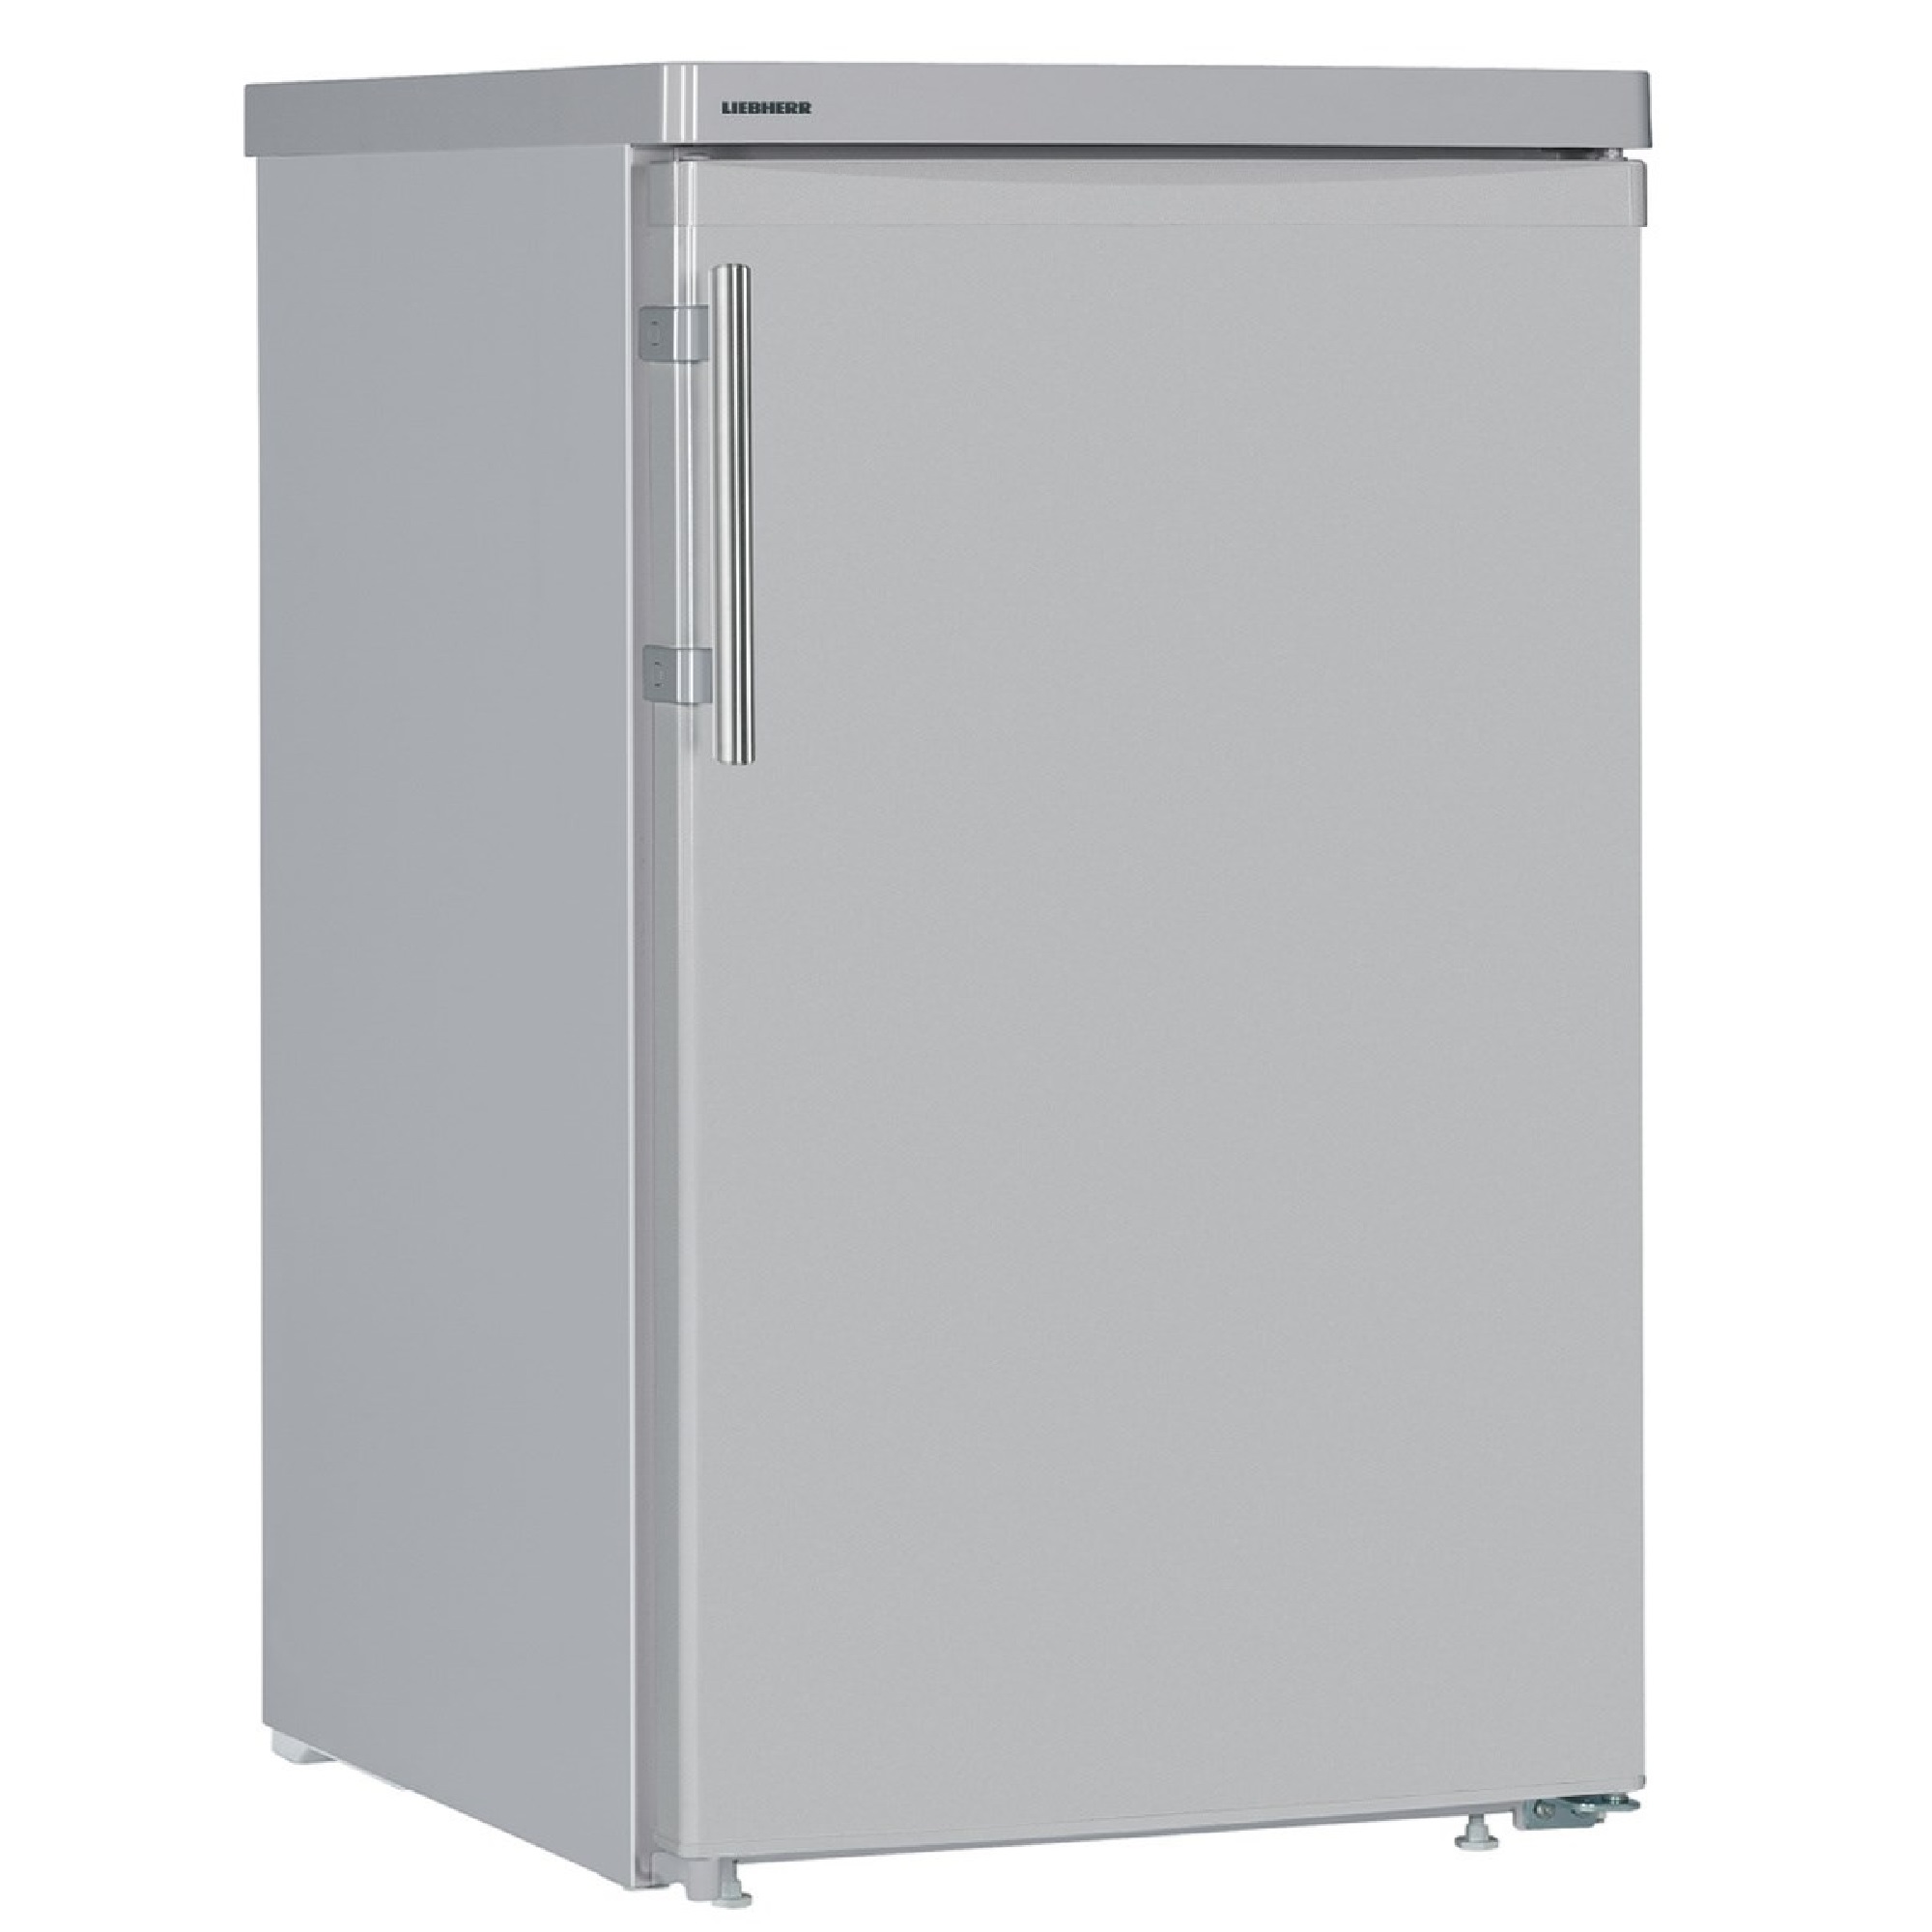 Купить низкий холодильник. Холодильник Liebherr TPESF 1714. Холодильник Liebherr TSL 1414. Холодильник Liebherr TSL 1414 серебристый. Liebherr TPESF 1714.